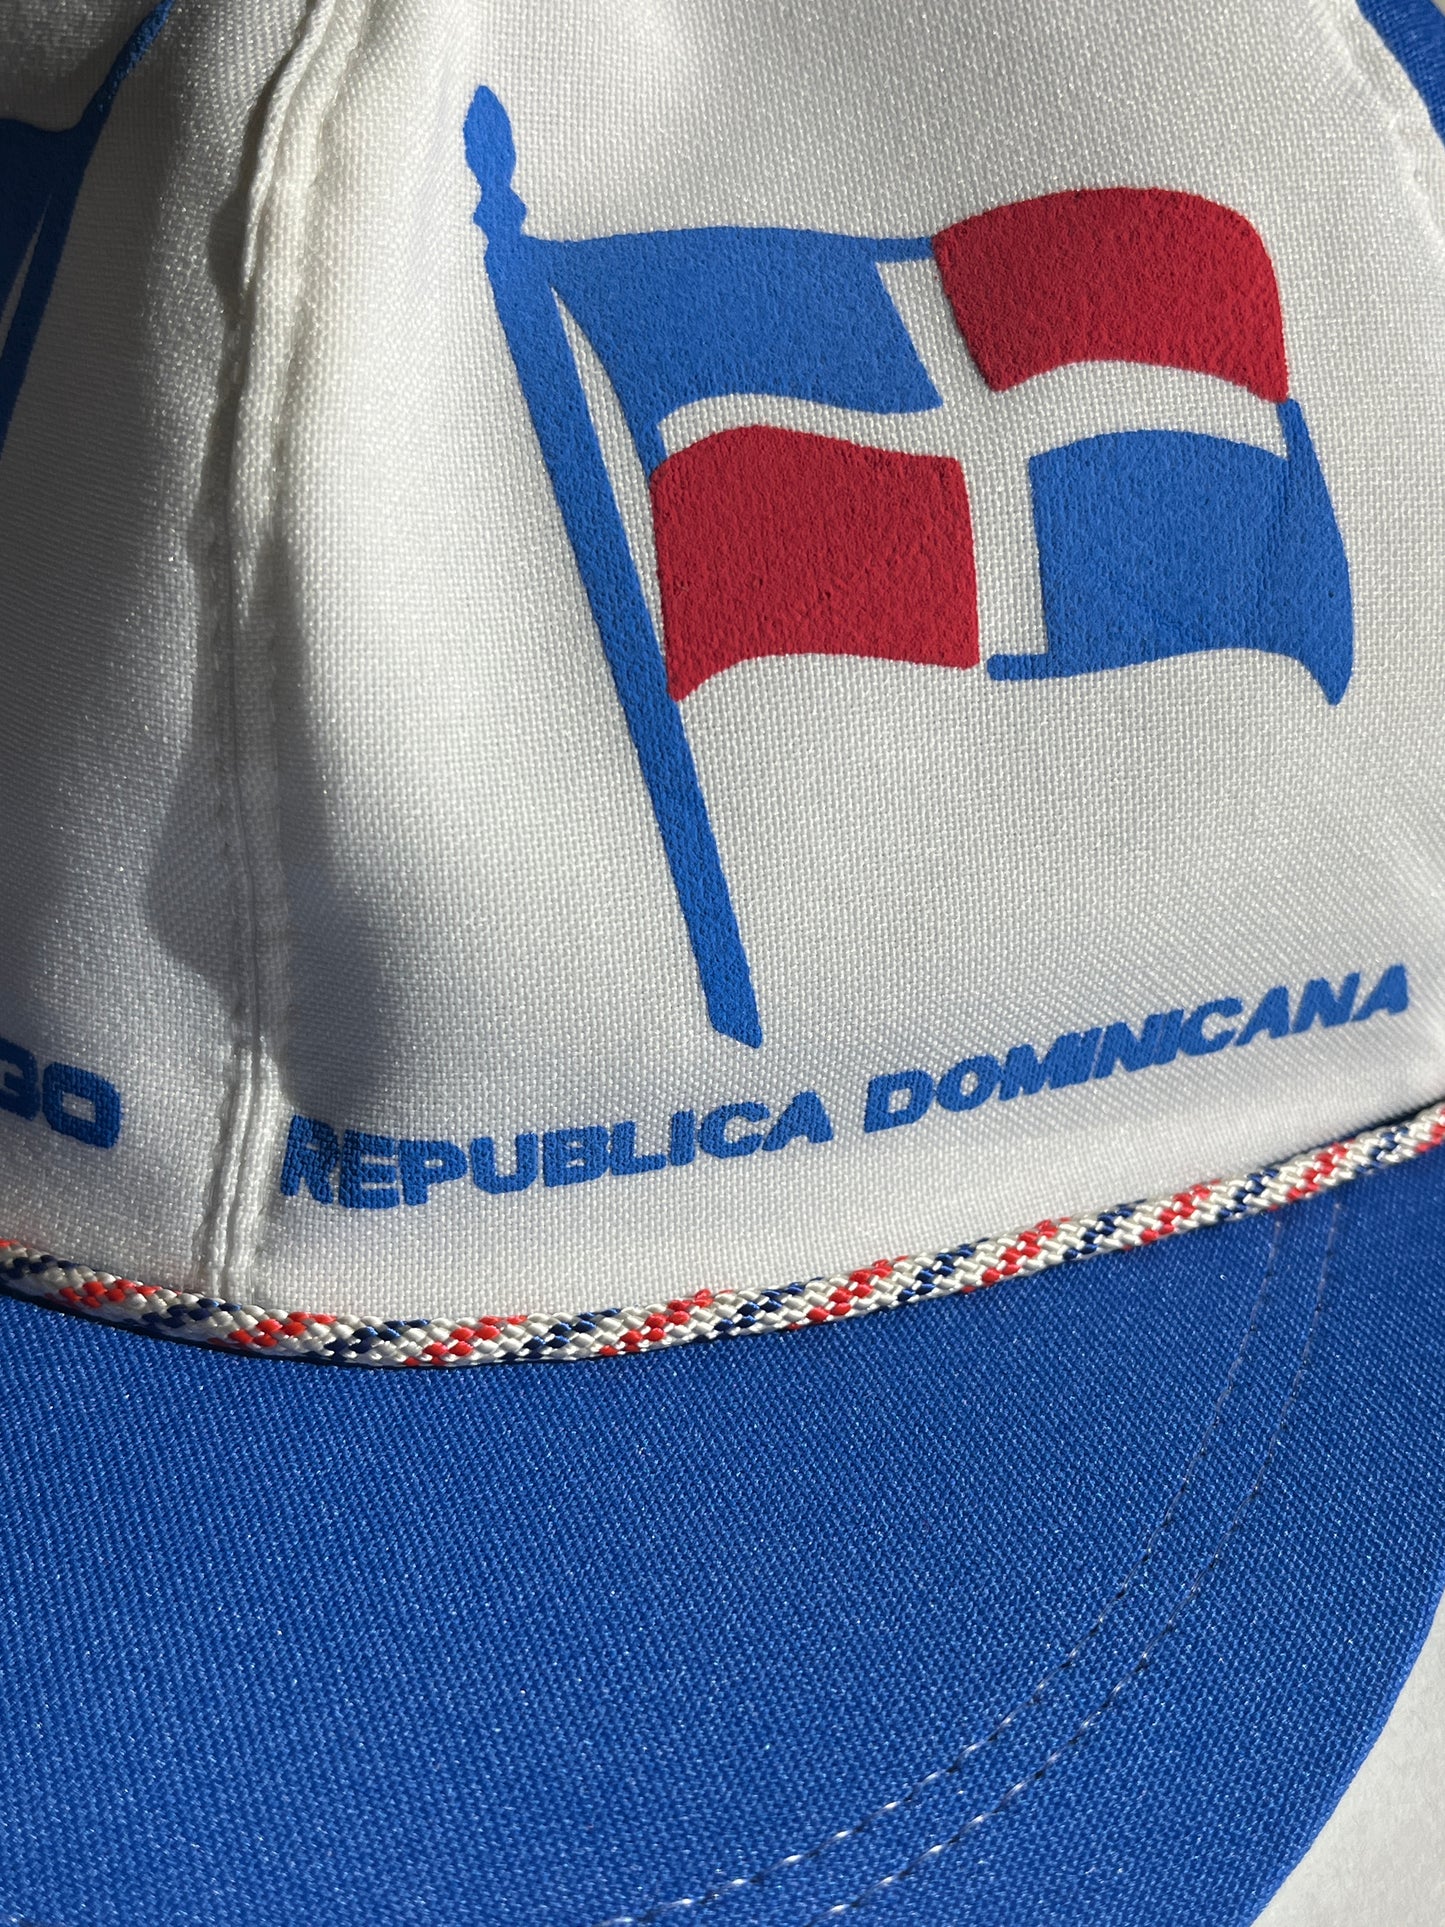 Vintage Dominican Republic Hat Snapback